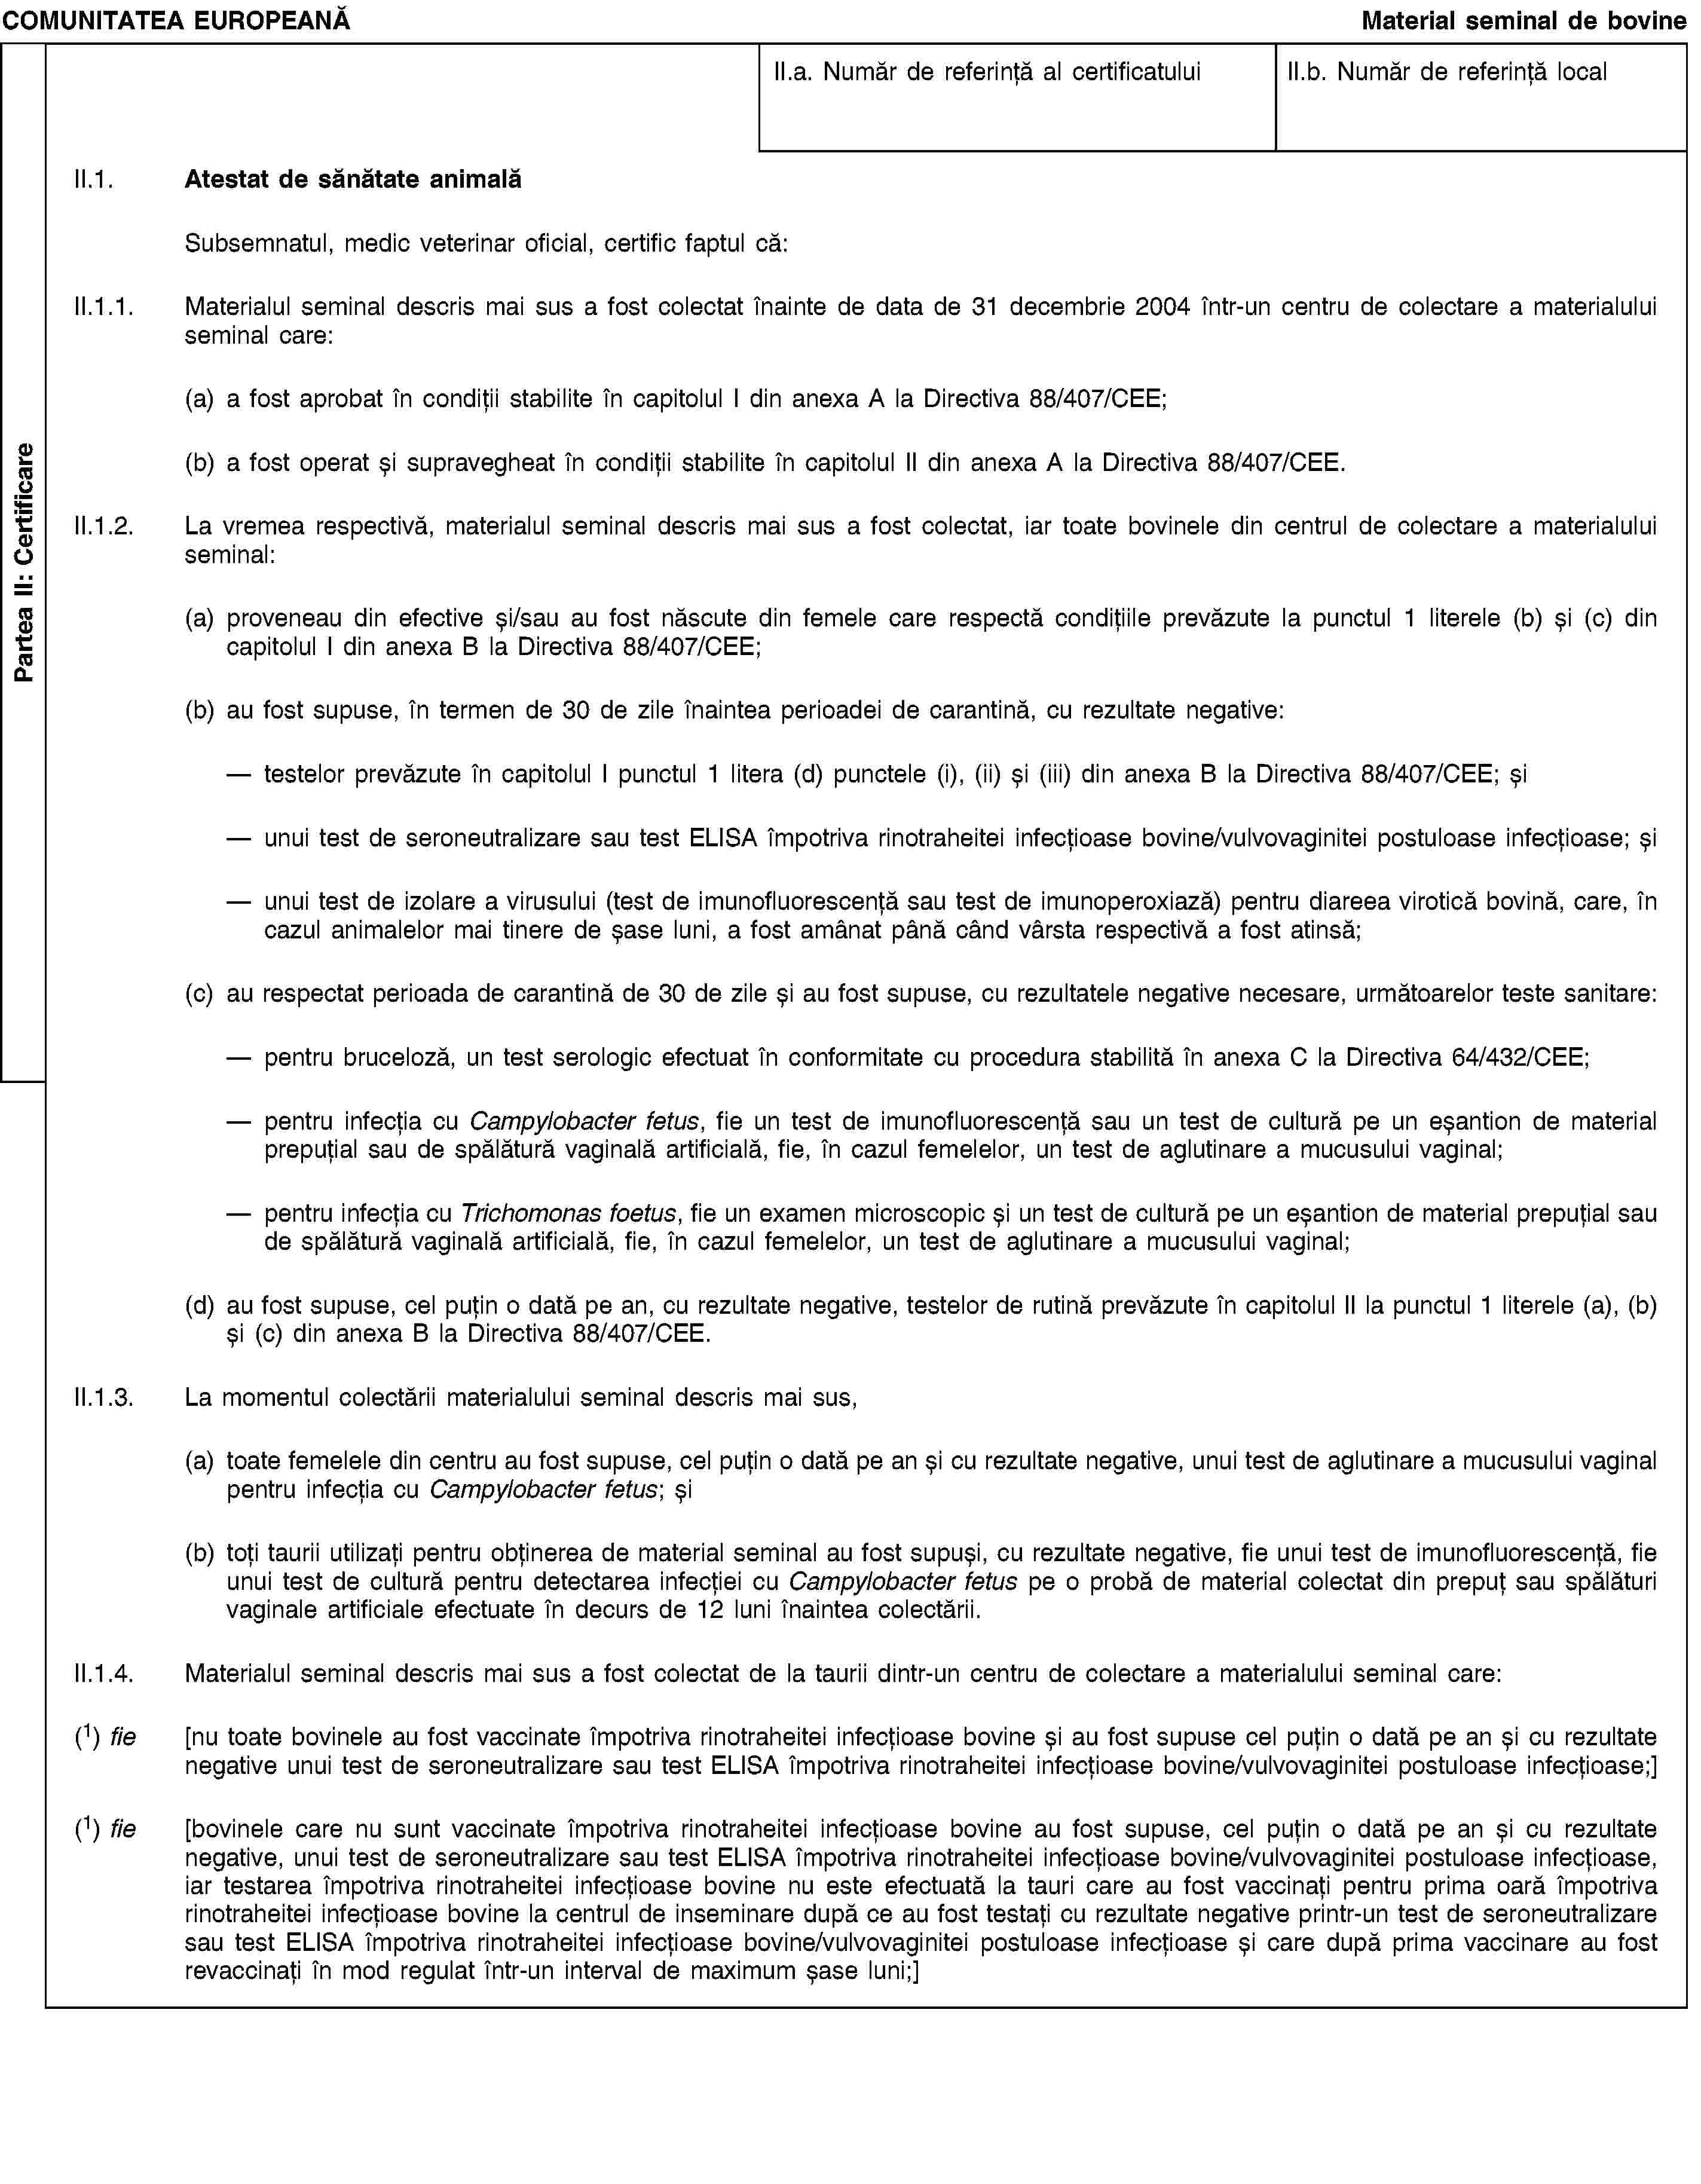 Partea II: CertificareCOMUNITATEA EUROPEANĂMaterial seminal de bovineII.a. Număr de referință al certificatuluiII.b. Număr de referință localII.1. Atestat de sănătate animalăSubsemnatul, medic veterinar oficial, certific faptul că:II.1.1. Materialul seminal descris mai sus a fost colectat înainte de data de 31 decembrie 2004 într-un centru de colectare a materialului seminal care:(a) a fost aprobat în condiții stabilite în capitolul I din anexa A la Directiva 88/407/CEE;(b) a fost operat și supravegheat în condiții stabilite în capitolul II din anexa A la Directiva 88/407/CEE.II.1.2. La vremea respectivă, materialul seminal descris mai sus a fost colectat, iar toate bovinele din centrul de colectare a materialului seminal:(a) proveneau din efective și/sau au fost născute din femele care respectă condițiile prevăzute la punctul 1 literele (b) și (c) din capitolul I din anexa B la Directiva 88/407/CEE;(b) au fost supuse, în termen de 30 de zile înaintea perioadei de carantină, cu rezultate negative:testelor prevăzute în capitolul I punctul 1 litera (d) punctele (i), (ii) și (iii) din anexa B la Directiva 88/407/CEE; șiunui test de seroneutralizare sau test ELISA împotriva rinotraheitei infecțioase bovine/vulvovaginitei postuloase infecțioase; șiunui test de izolare a virusului (test de imunofluorescență sau test de imunoperoxiază) pentru diareea virotică bovină, care, în cazul animalelor mai tinere de șase luni, a fost amânat până când vârsta respectivă a fost atinsă;(c) au respectat perioada de carantină de 30 de zile și au fost supuse, cu rezultatele negative necesare, următoarelor teste sanitare:pentru bruceloză, un test serologic efectuat în conformitate cu procedura stabilită în anexa C la Directiva 64/432/CEE;pentru infecția cu Campylobacter fetus, fie un test de imunofluorescență sau un test de cultură pe un eșantion de material prepuțial sau de spălătură vaginală artificială, fie, în cazul femelelor, un test de aglutinare a mucusului vaginal;pentru infecția cu Trichomonas foetus, fie un examen microscopic și un test de cultură pe un eșantion de material prepuțial sau de spălătură vaginală artificială, fie, în cazul femelelor, un test de aglutinare a mucusului vaginal;(d) au fost supuse, cel puțin o dată pe an, cu rezultate negative, testelor de rutină prevăzute în capitolul II la punctul 1 literele (a), (b) și (c) din anexa B la Directiva 88/407/CEE.II.1.3. La momentul colectării materialului seminal descris mai sus,(a) toate femelele din centru au fost supuse, cel puțin o dată pe an și cu rezultate negative, unui test de aglutinare a mucusului vaginal pentru infecția cu Campylobacter fetus; și(b) toți taurii utilizați pentru obținerea de material seminal au fost supuși, cu rezultate negative, fie unui test de imunofluorescență, fie unui test de cultură pentru detectarea infecției cu Campylobacter fetus pe o probă de material colectat din prepuț sau spălături vaginale artificiale efectuate în decurs de 12 luni înaintea colectării.II.1.4. Materialul seminal descris mai sus a fost colectat de la taurii dintr-un centru de colectare a materialului seminal care:(1) fie [nu toate bovinele au fost vaccinate împotriva rinotraheitei infecțioase bovine și au fost supuse cel puțin o dată pe an și cu rezultate negative unui test de seroneutralizare sau test ELISA împotriva rinotraheitei infecțioase bovine/vulvovaginitei postuloase infecțioase;](1) fie [bovinele care nu sunt vaccinate împotriva rinotraheitei infecțioase bovine au fost supuse, cel puțin o dată pe an și cu rezultate negative, unui test de seroneutralizare sau test ELISA împotriva rinotraheitei infecțioase bovine/vulvovaginitei postuloase infecțioase, iar testarea împotriva rinotraheitei infecțioase bovine nu este efectuată la tauri care au fost vaccinați pentru prima oară împotriva rinotraheitei infecțioase bovine la centrul de inseminare după ce au fost testați cu rezultate negative printr-un test de seroneutralizare sau test ELISA împotriva rinotraheitei infecțioase bovine/vulvovaginitei postuloase infecțioase și care după prima vaccinare au fost revaccinați în mod regulat într-un interval de maximum șase luni;]